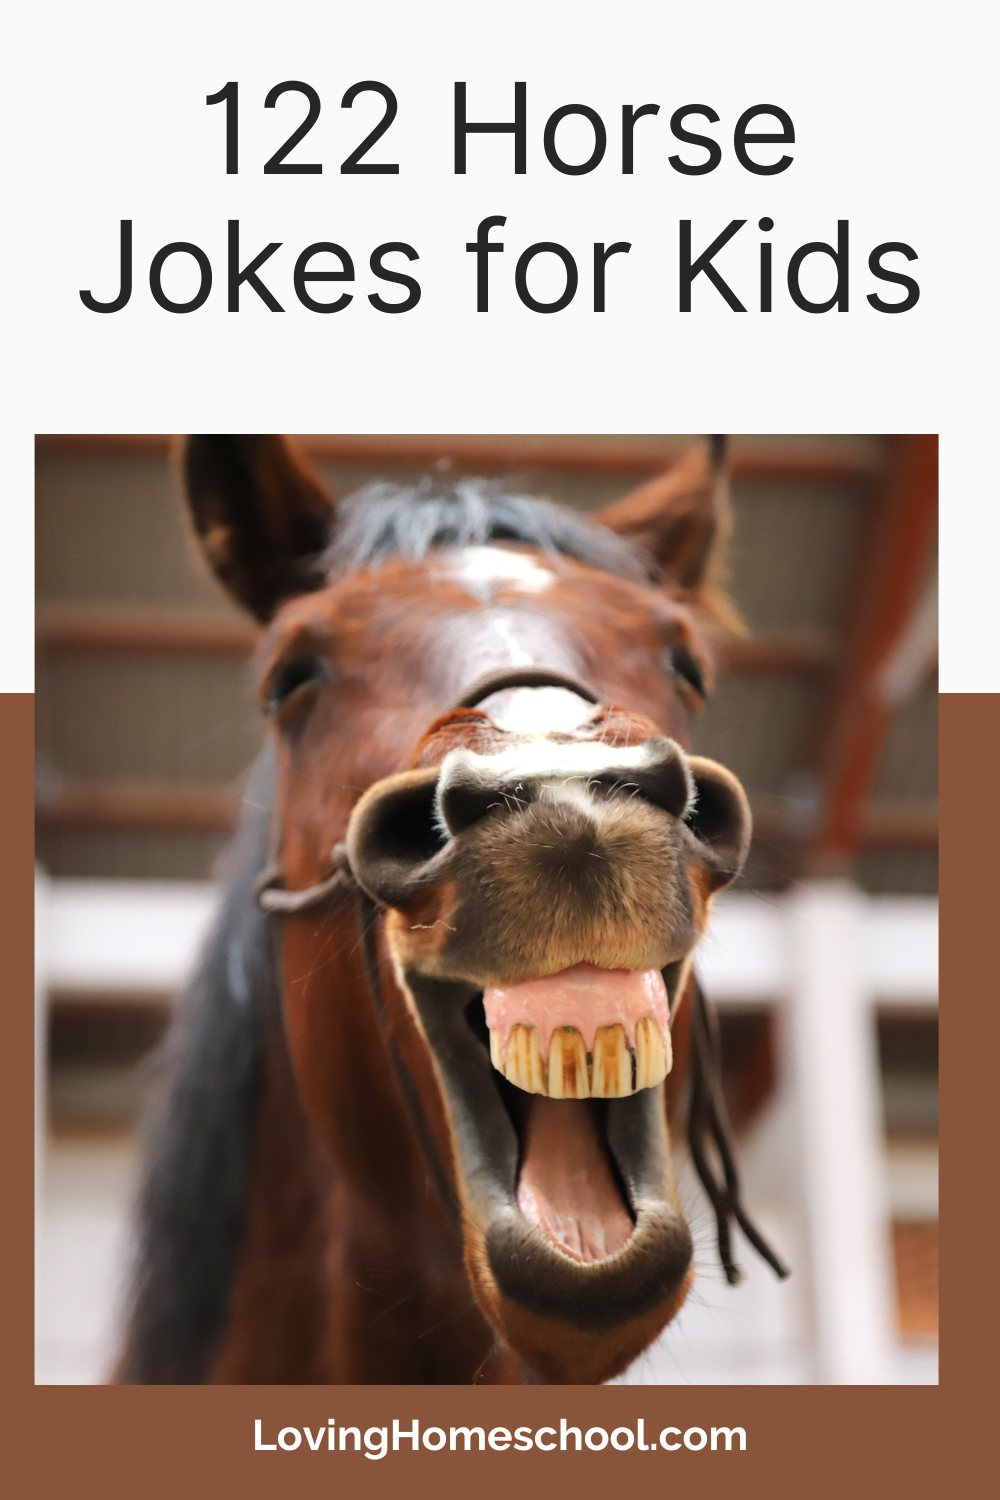 122 Horse Jokes for Kids Pinterest Pin